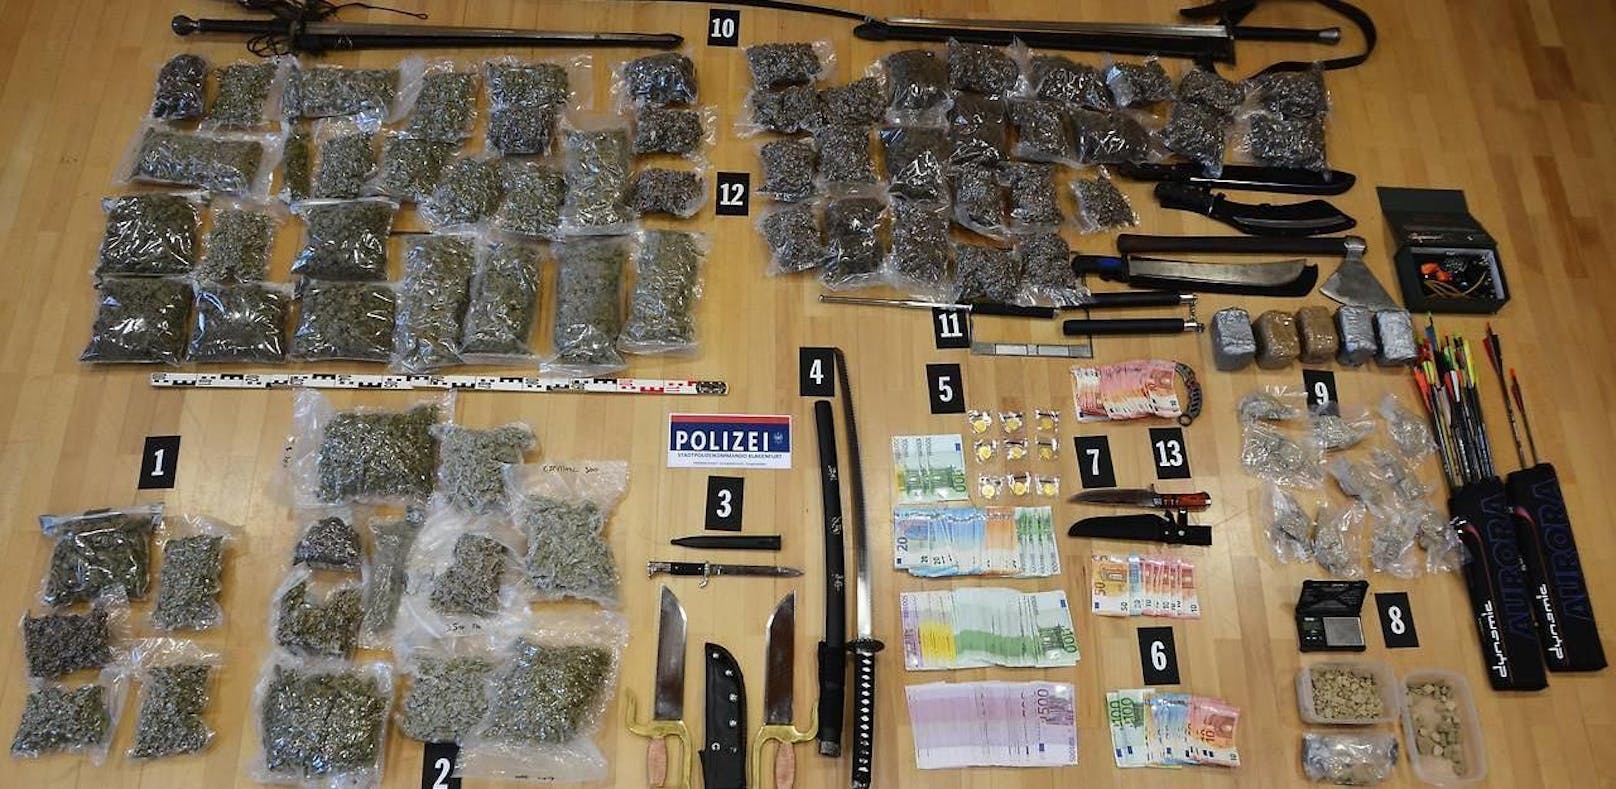 Drogen, Waffen und Bargeld konnten sichergestellt werden - ein voller erfolg für die Polizei.